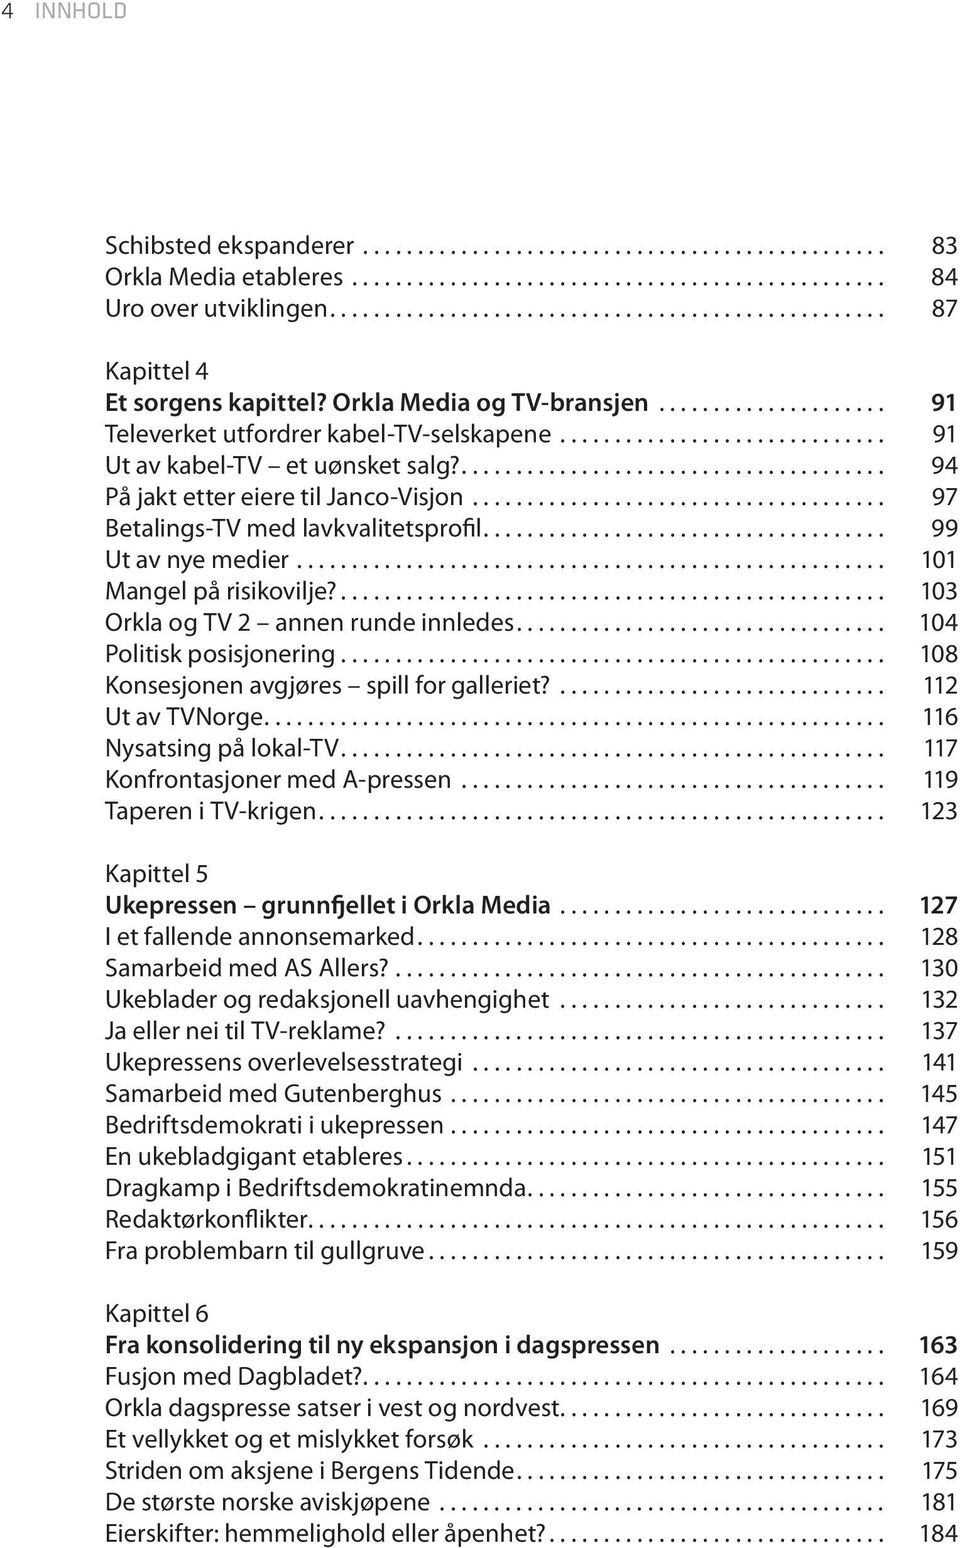 ... 103 Orkla og TV 2 annen runde innledes.... 104 Politisk posisjonering... 108 Konsesjonen avgjøres spill for galleriet?... 112 Ut av TVNorge.... 116 Nysatsing på lokal-tv.